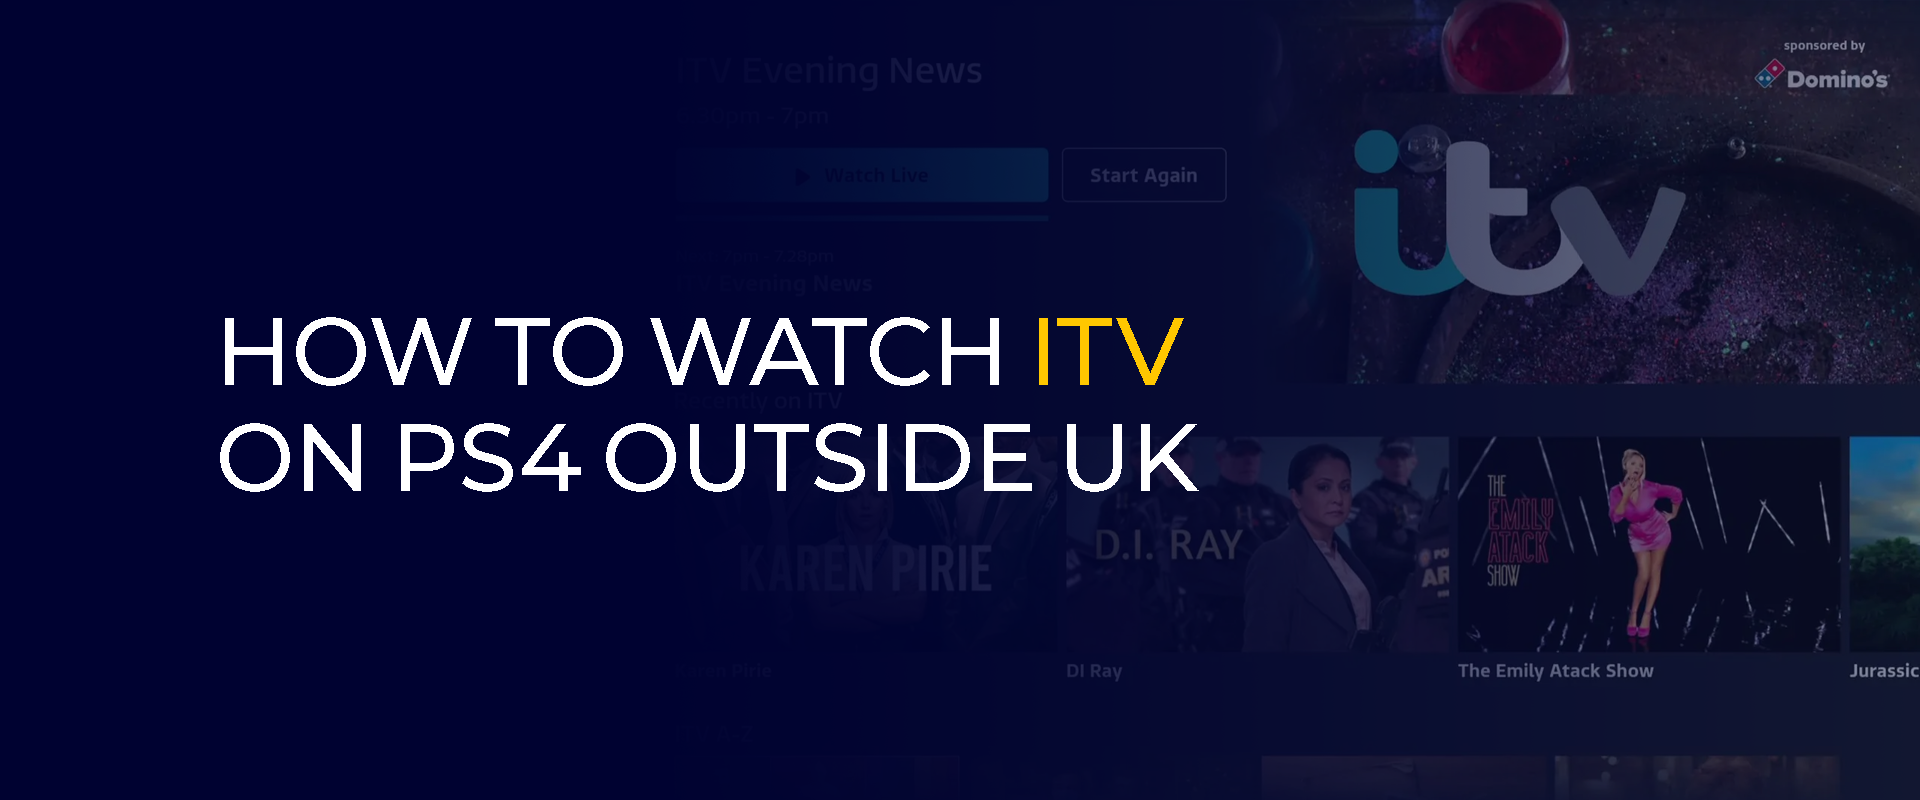 Hur man tittar på ITV på PS4 utanför Storbritannien